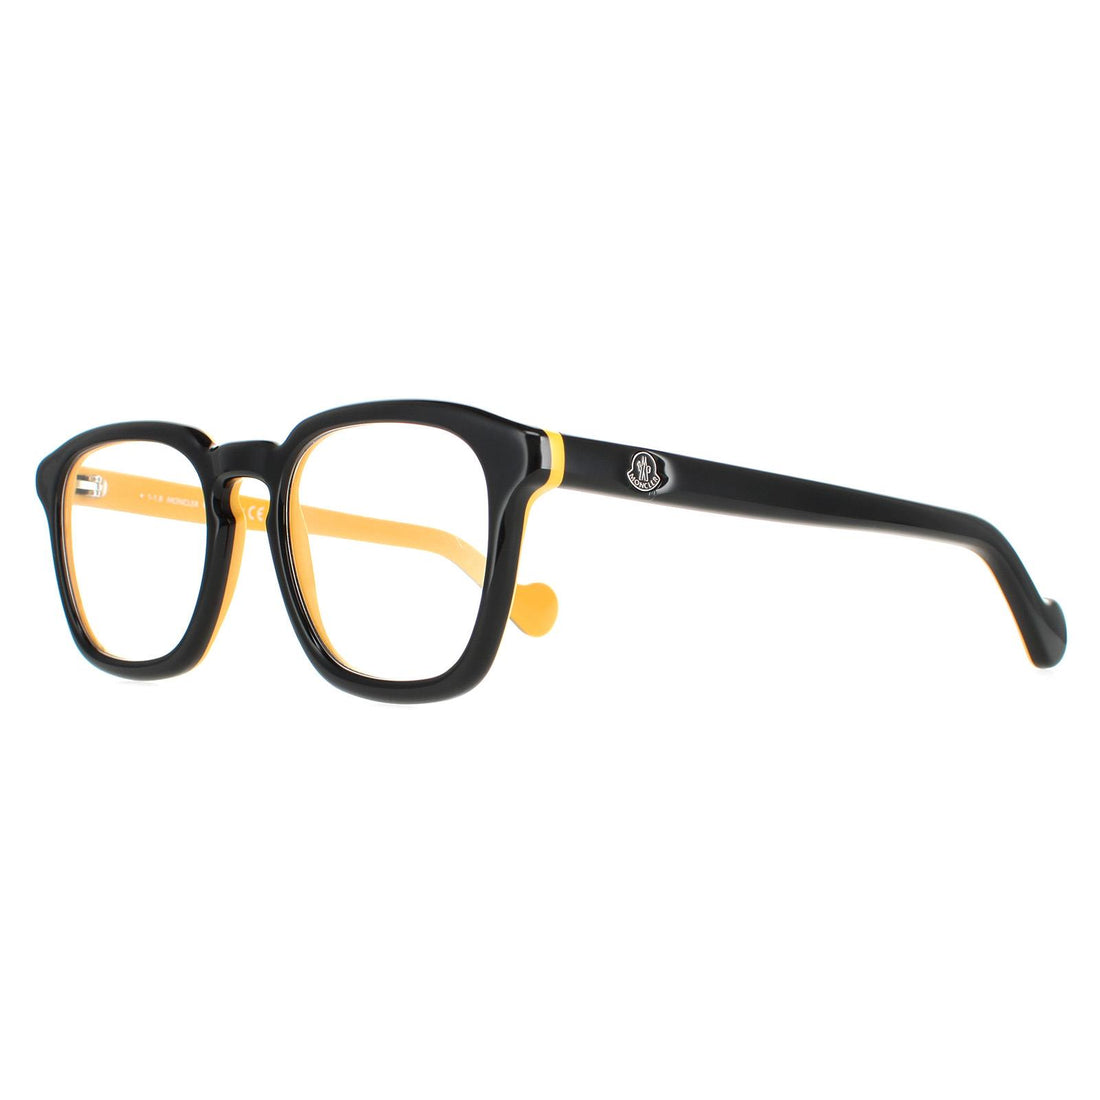 Moncler ML5042 Glasses Frames